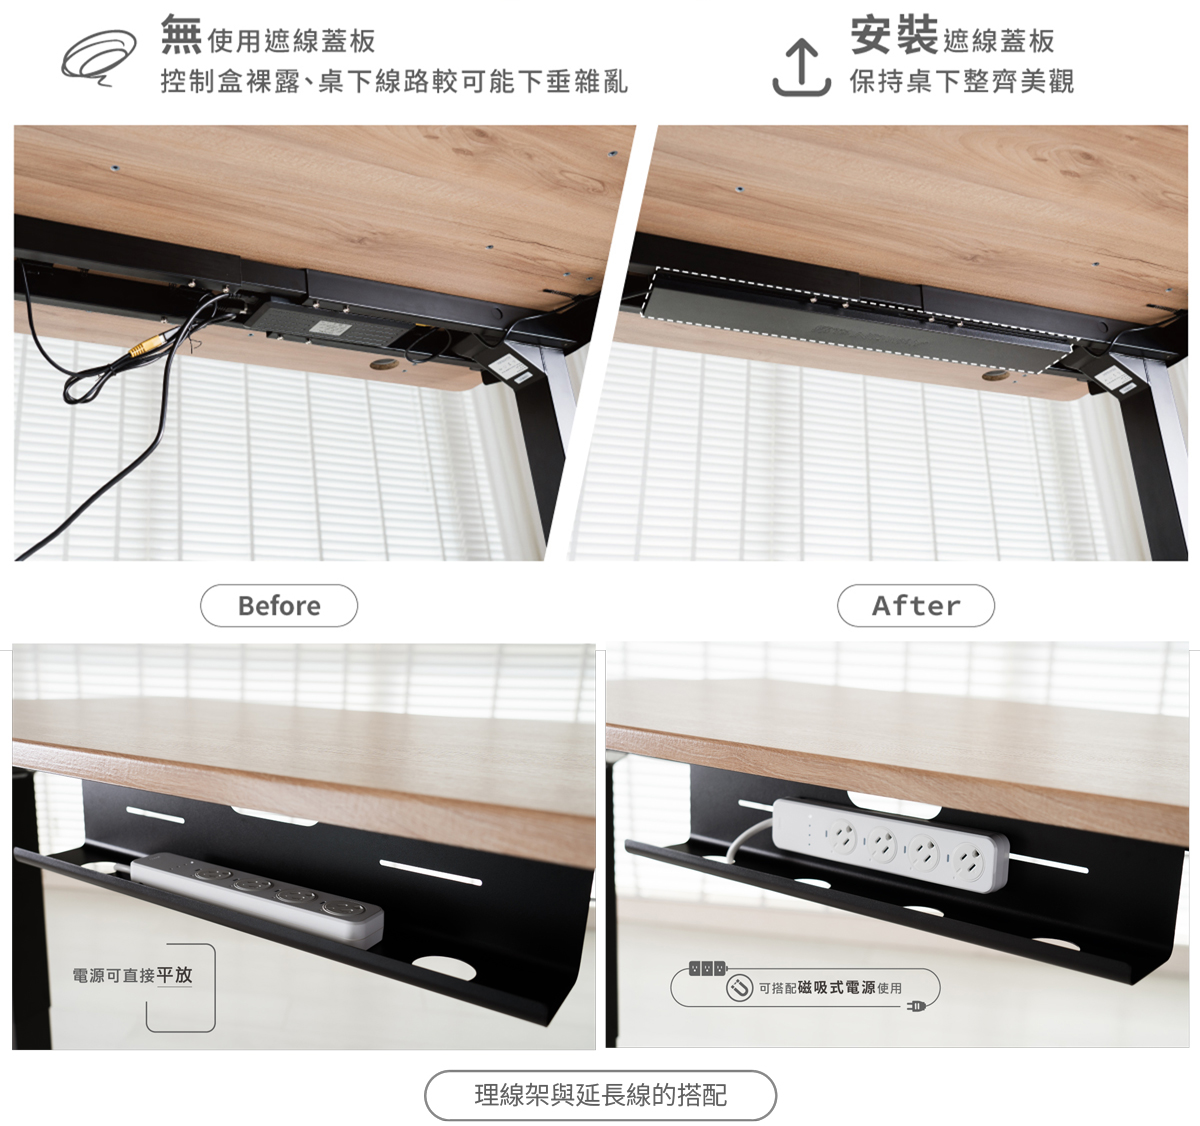 保持桌面整潔的升降桌配件-遮線蓋板、理線架與延長線